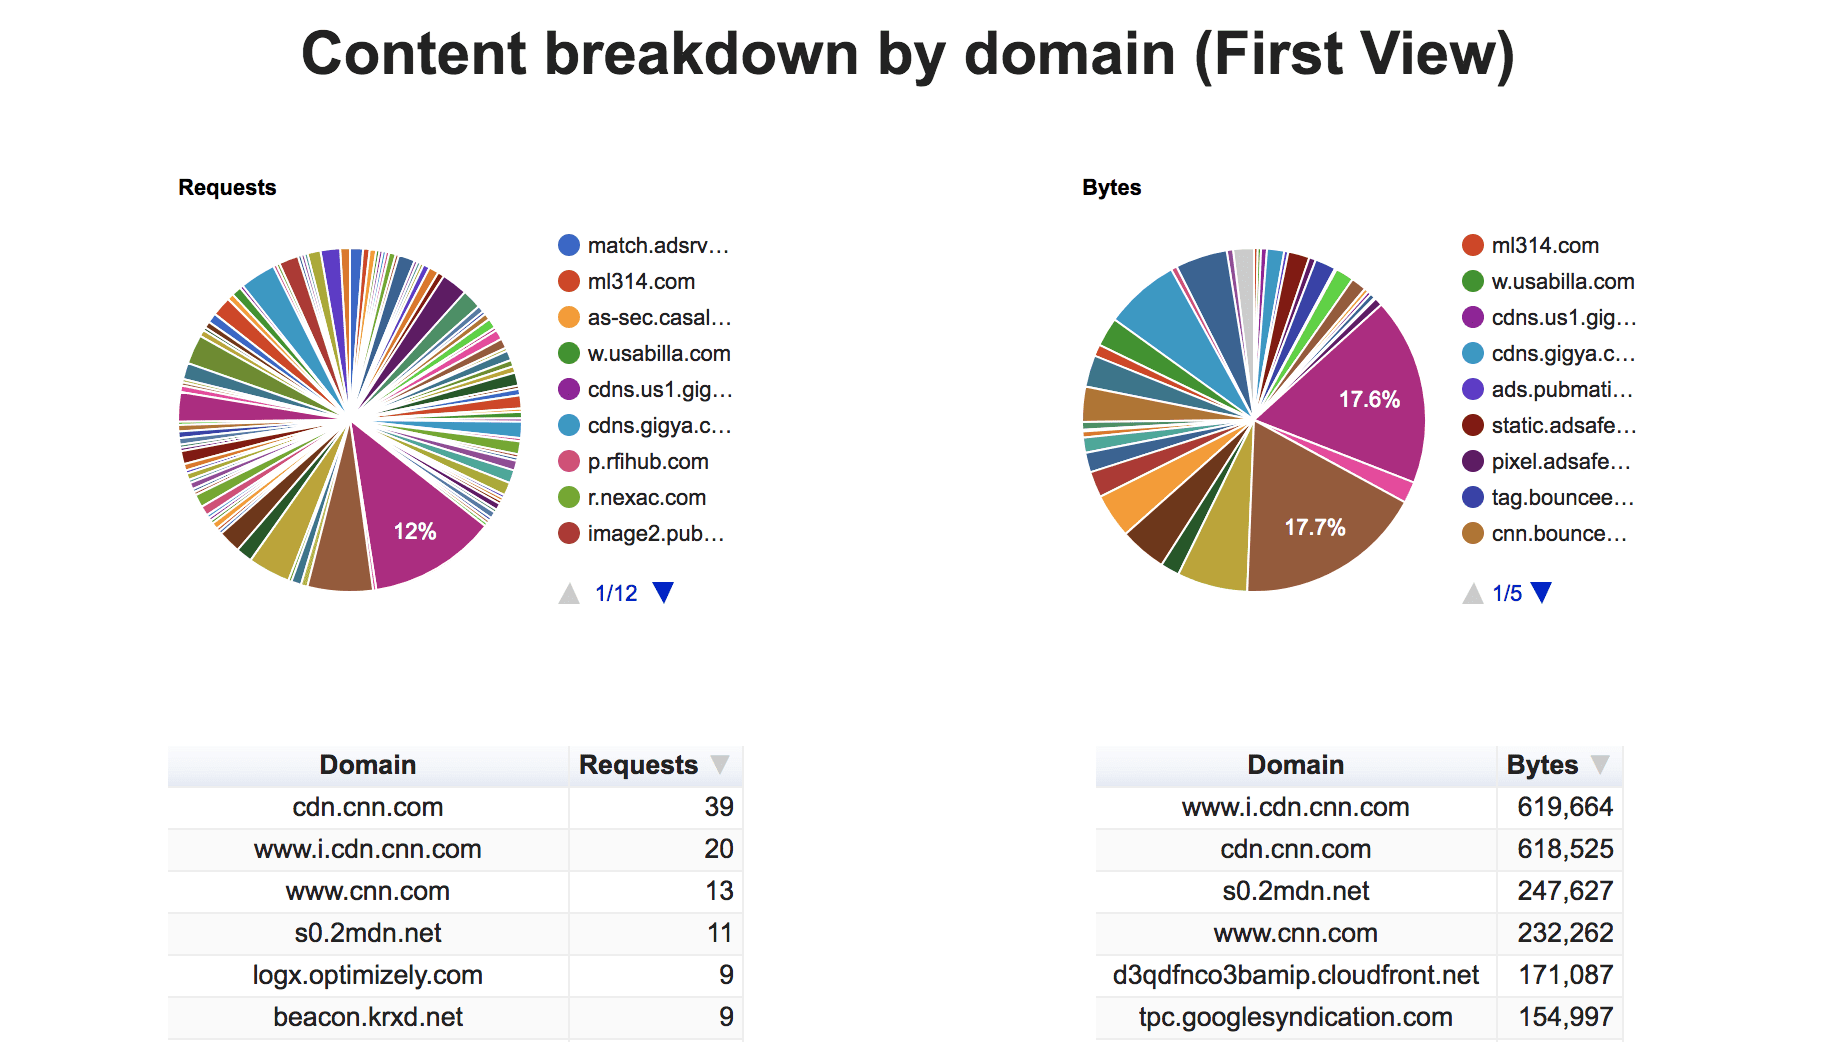 pengelompokan konten menurut domain (tampilan pertama).
Menampilkan persentase permintaan dan byte untuk setiap pihak ketiga